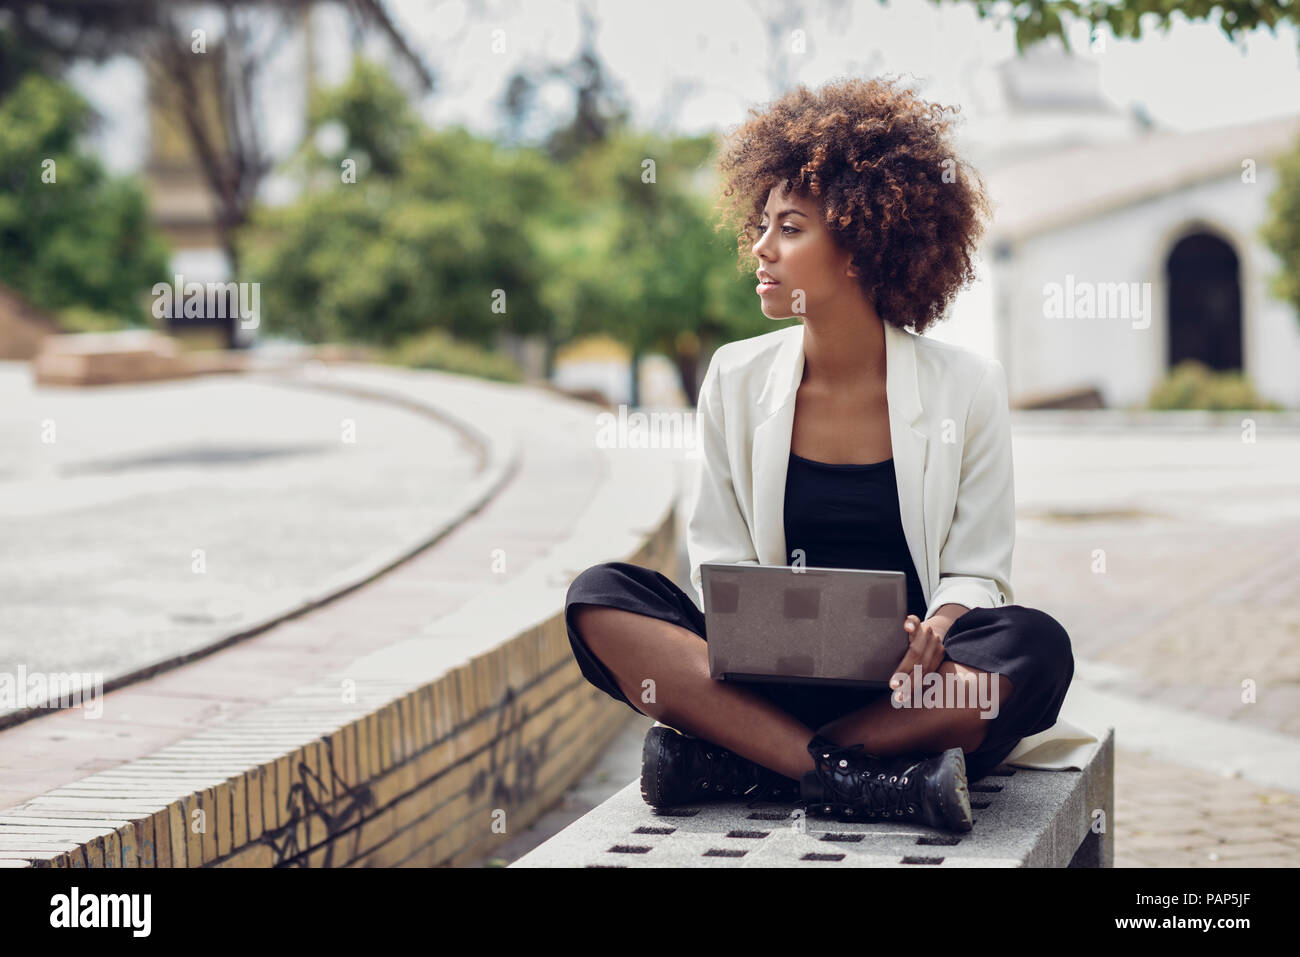 Moda joven con el cabello rizado sentado en un banco con portátil Foto de stock